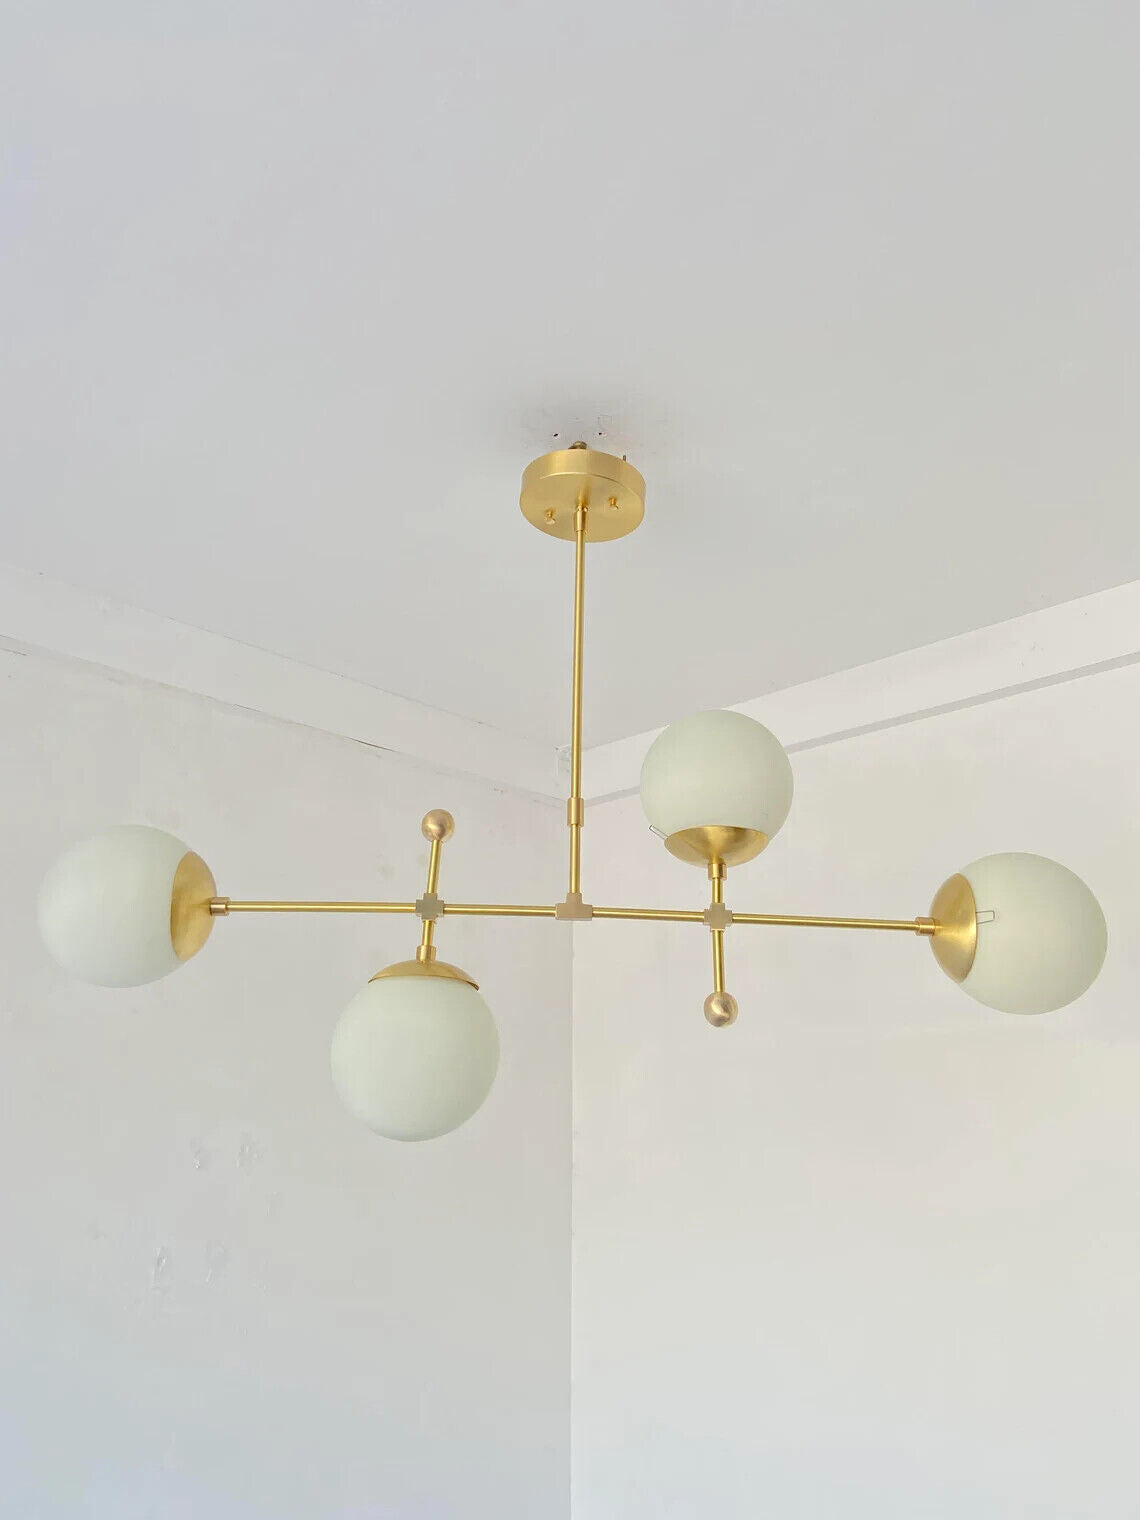 Sputnik Chandelier Lighting - 4 light Globe Hanging Light - Mid Century Modern